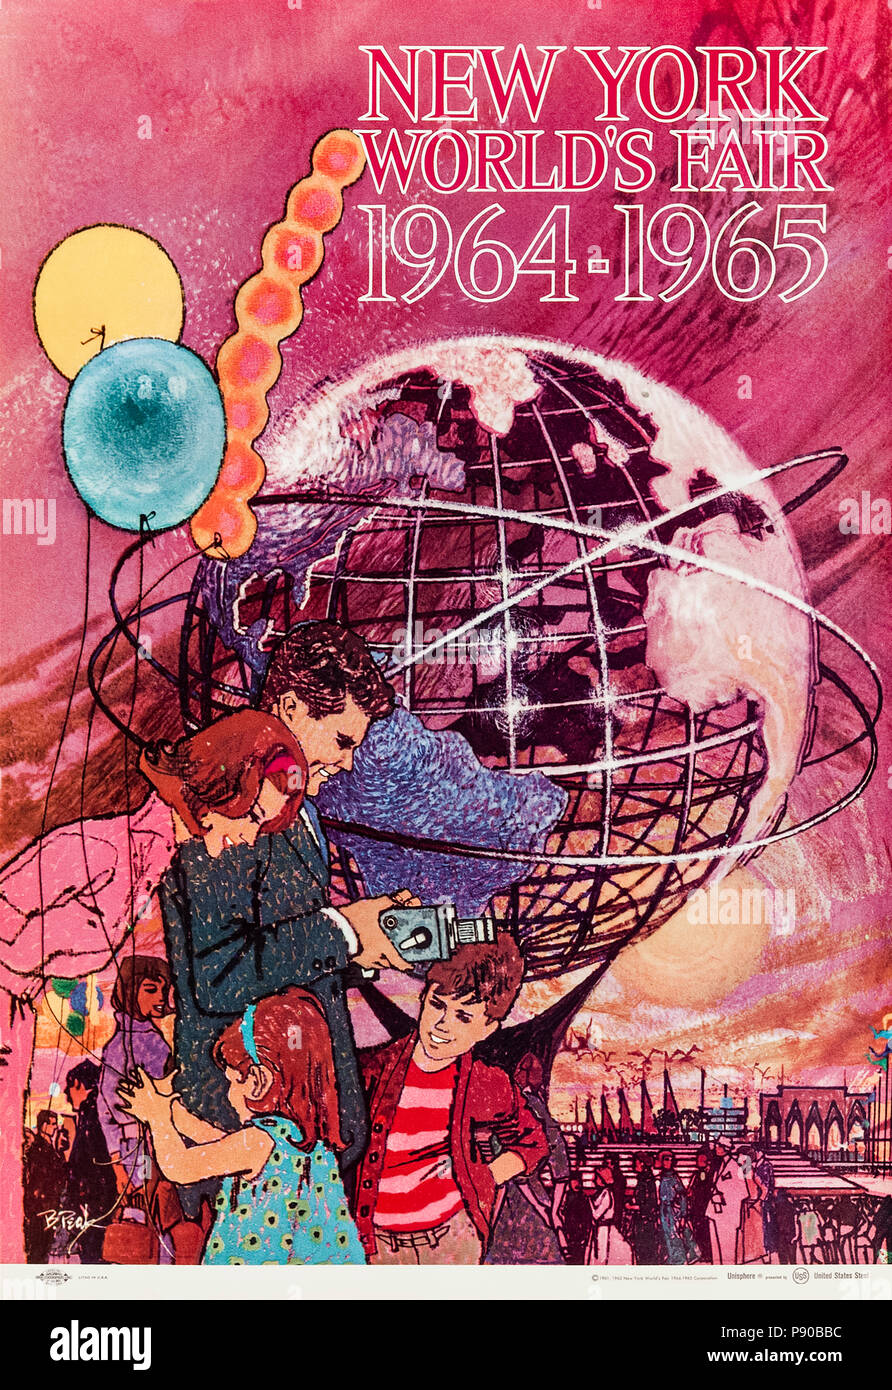 "In New York World's Fair 1964-1965 'Poster von Bob Peak (1927-1992), die eine junge Familie die Messe mit dem Unisphere Besuch im Hintergrund. Weitere Informationen finden Sie unten. Stockfoto